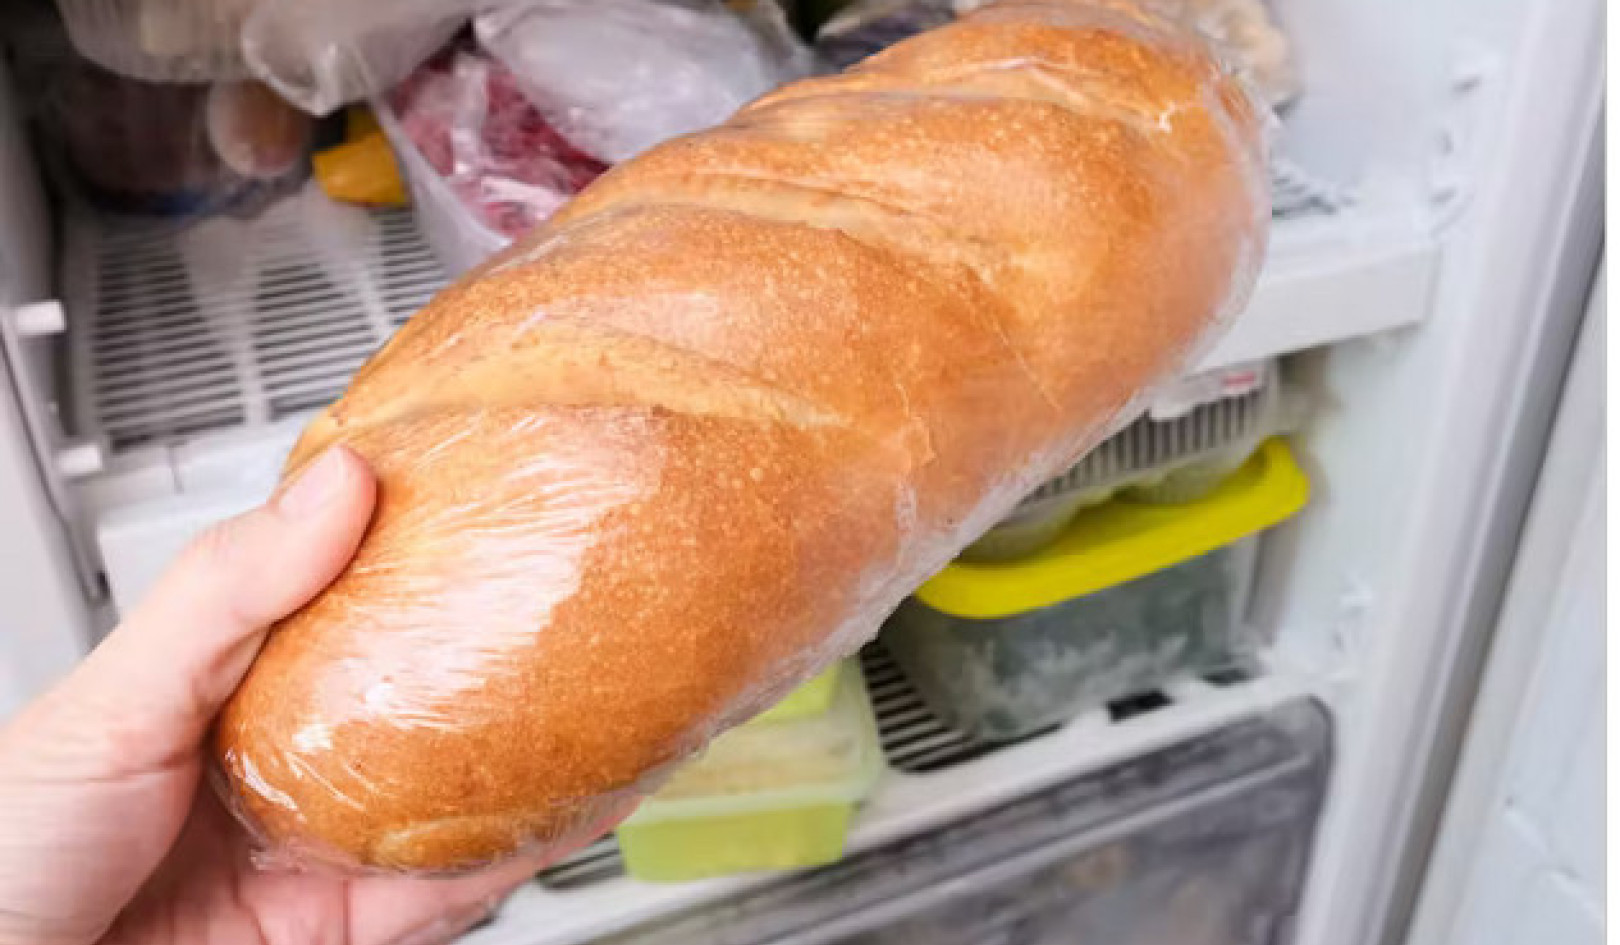 La congélation du pain le rend-elle plus saine ? La vérité révélée